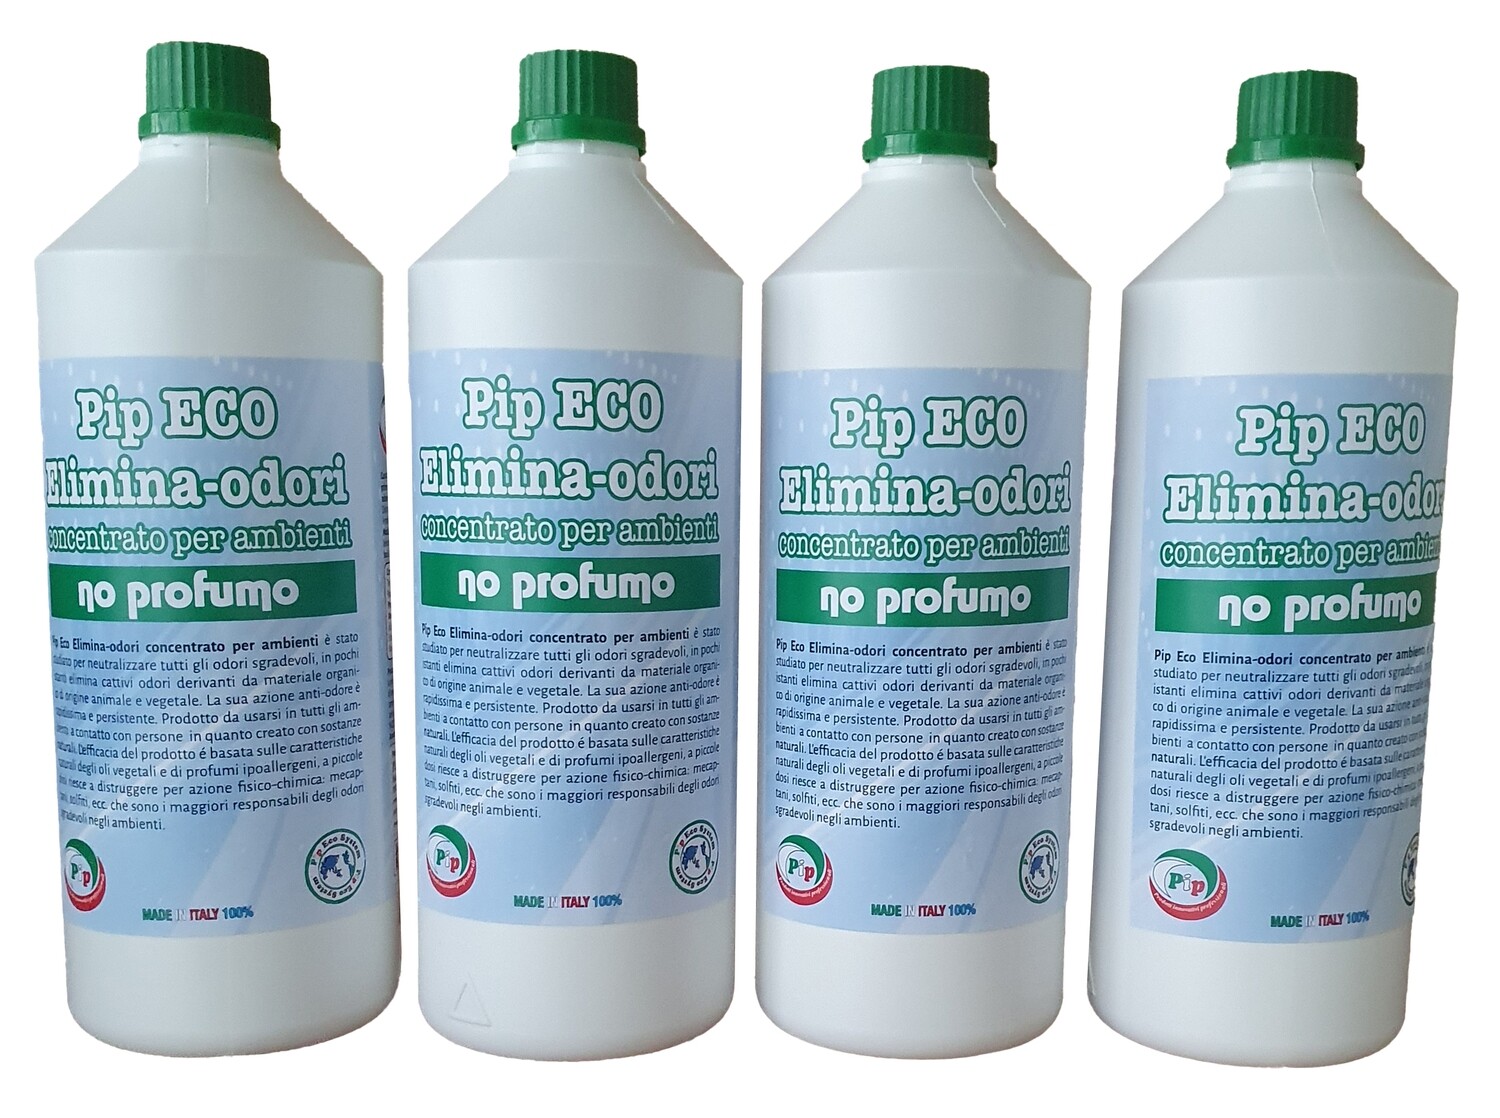 Elimina Odori Eco concentrato NO-PROFUMO
Pip Conf. x 2 Flaconi da 1 Litro pari a 20 litri P.uso